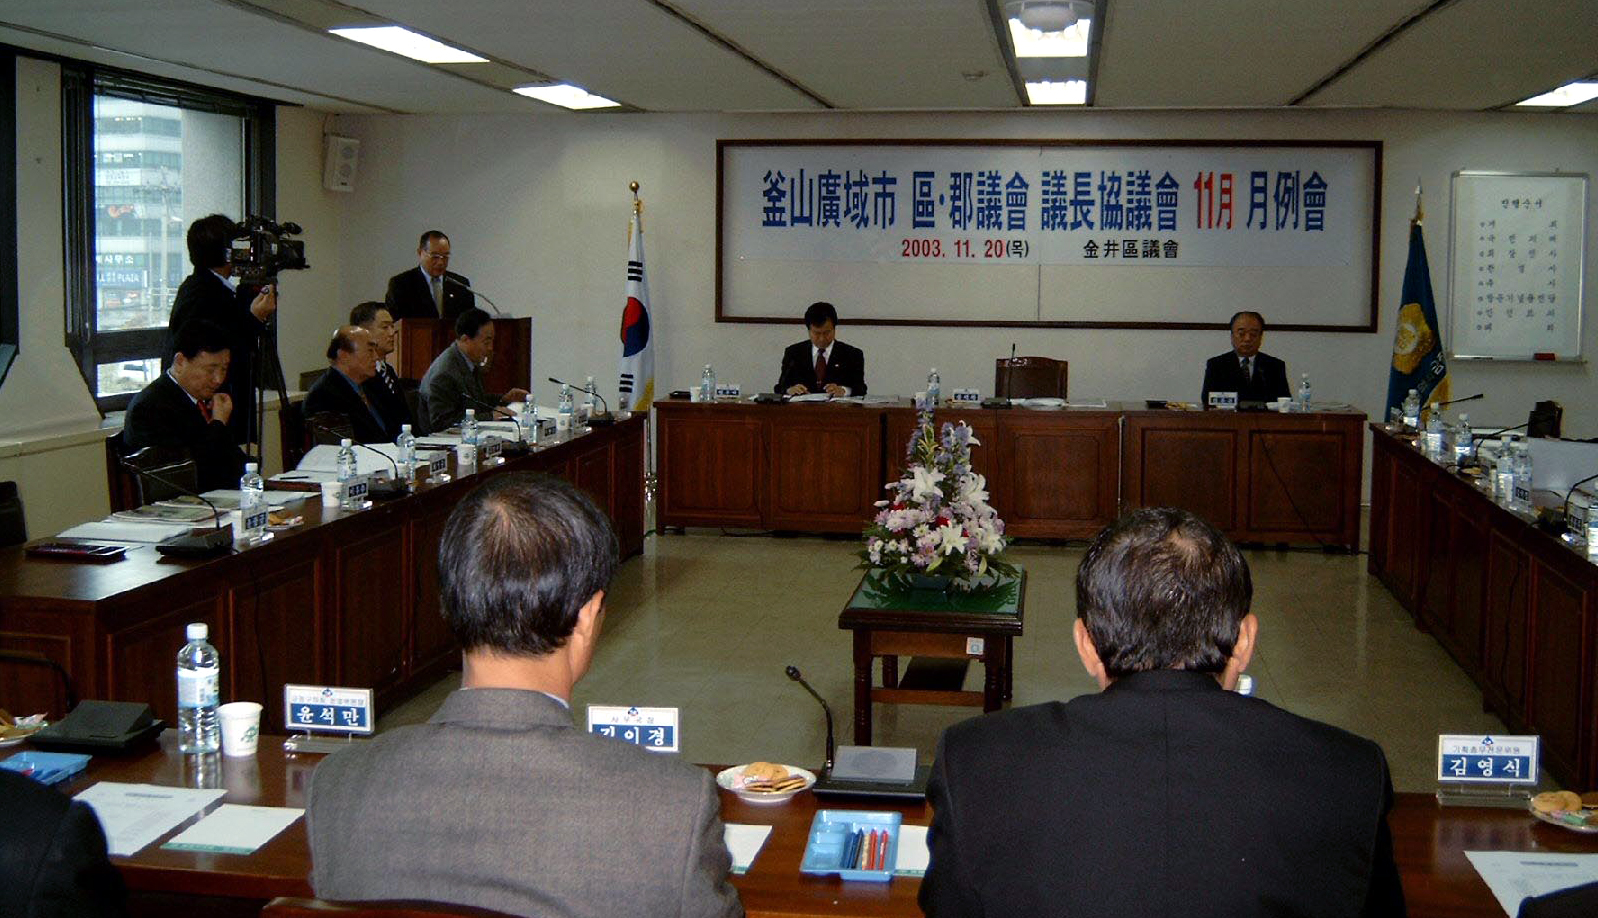 구·군의회 의장협의회 11월 월례회 개최 ▷ 2003.11.20.11:00(의회 2층 소회의실)